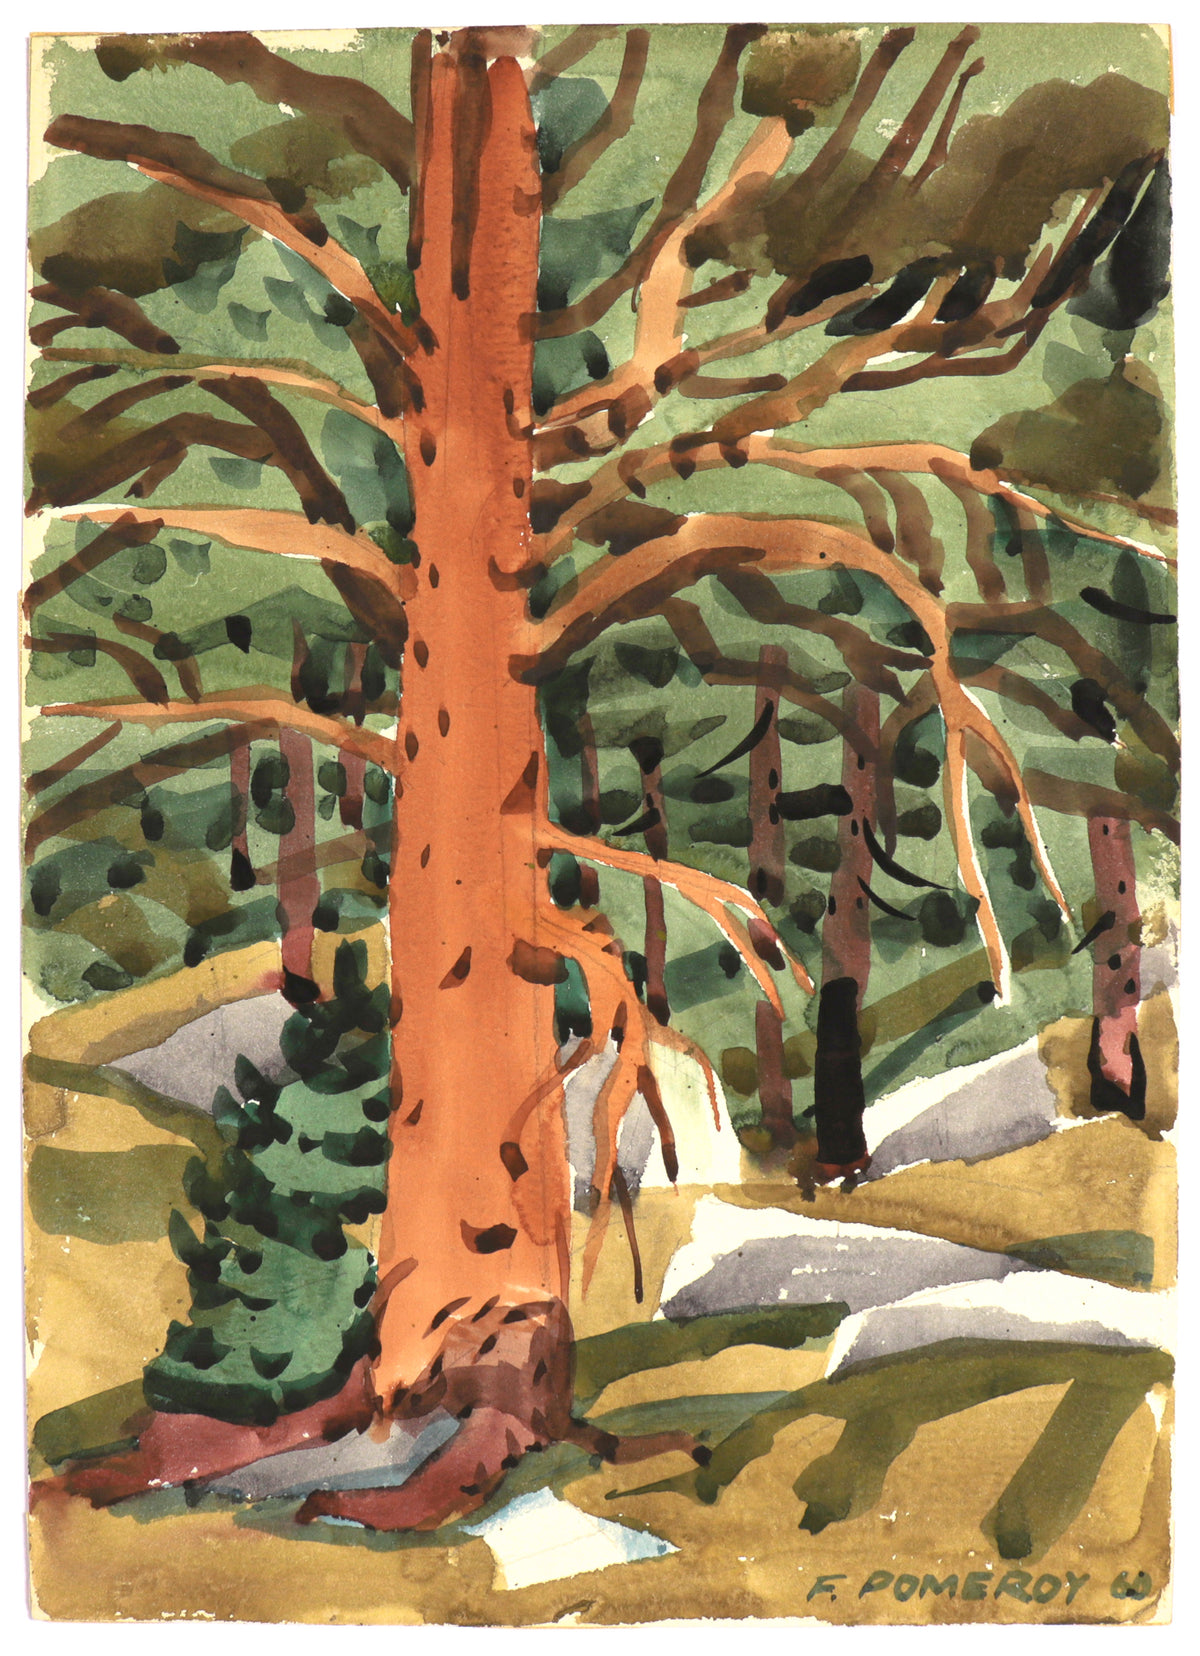 &lt;I&gt;The Red Pine&lt;/I&gt; &lt;br&gt;1960 Watercolor&lt;br&gt;&lt;br&gt;#C5177